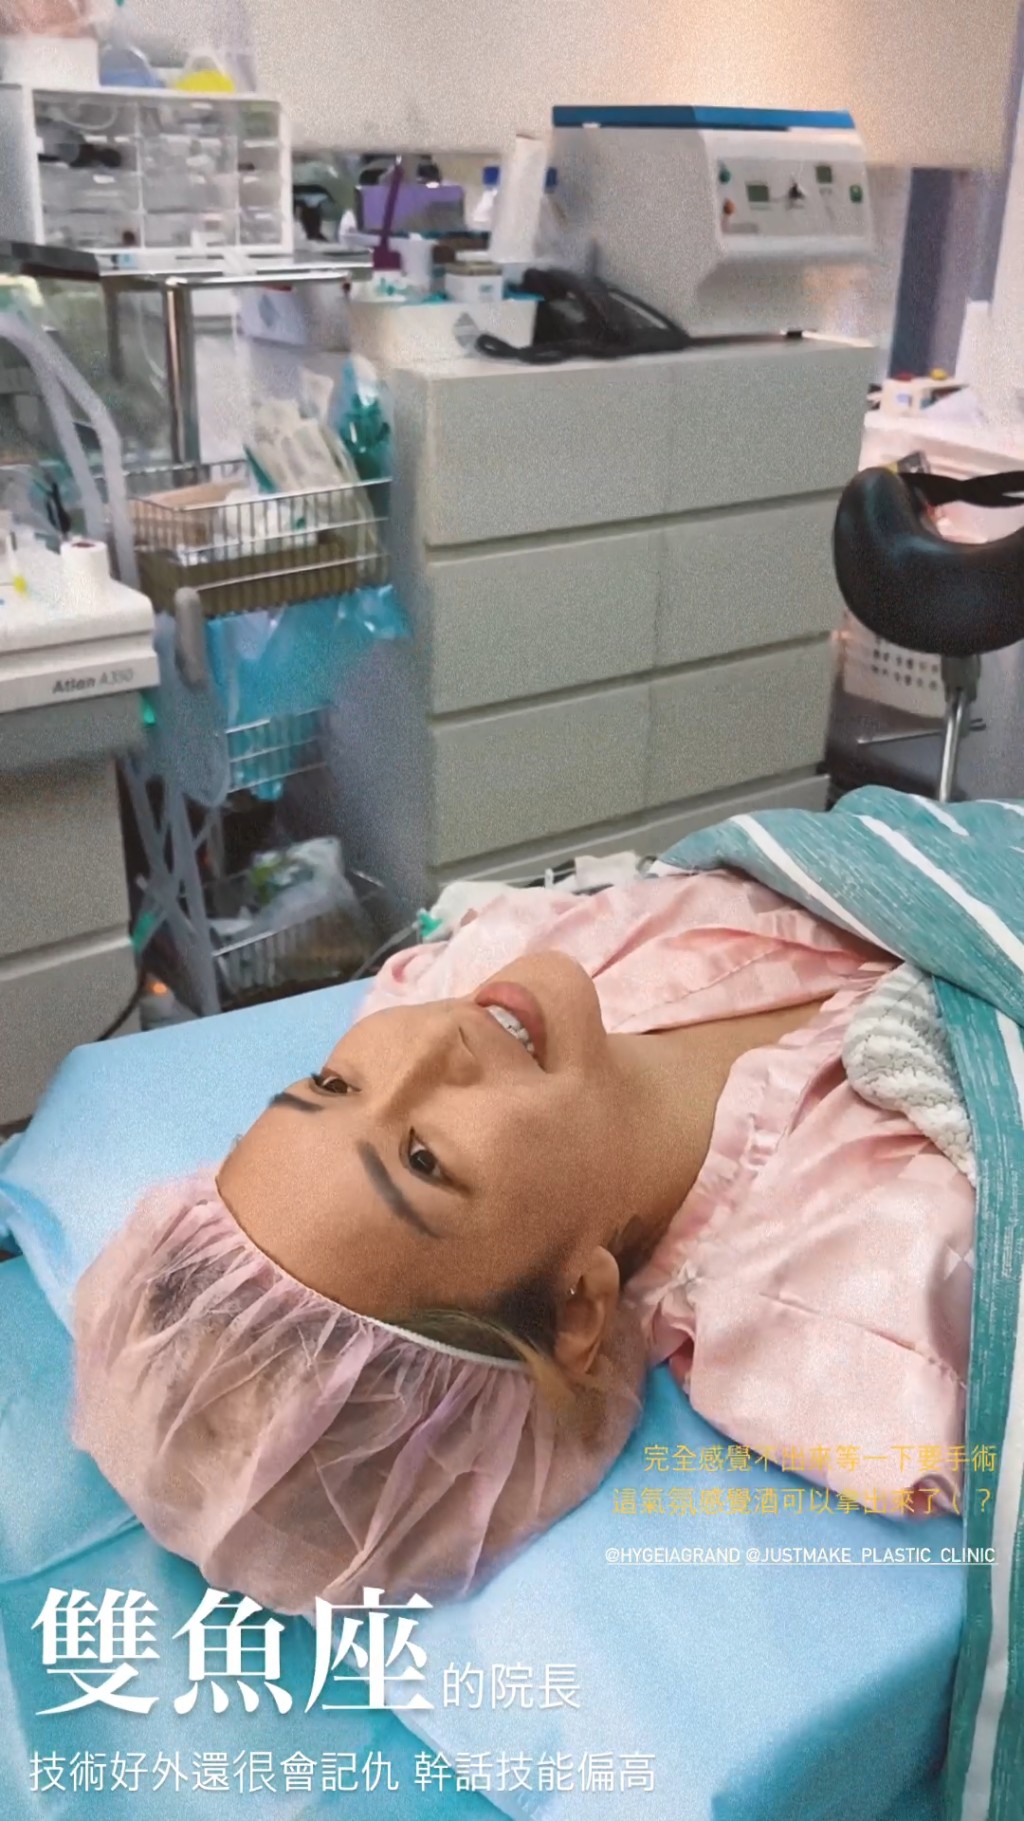 梁云菲昨日在IG晒出在診所做手術的照片，更自爆做「一線鮑手術」。